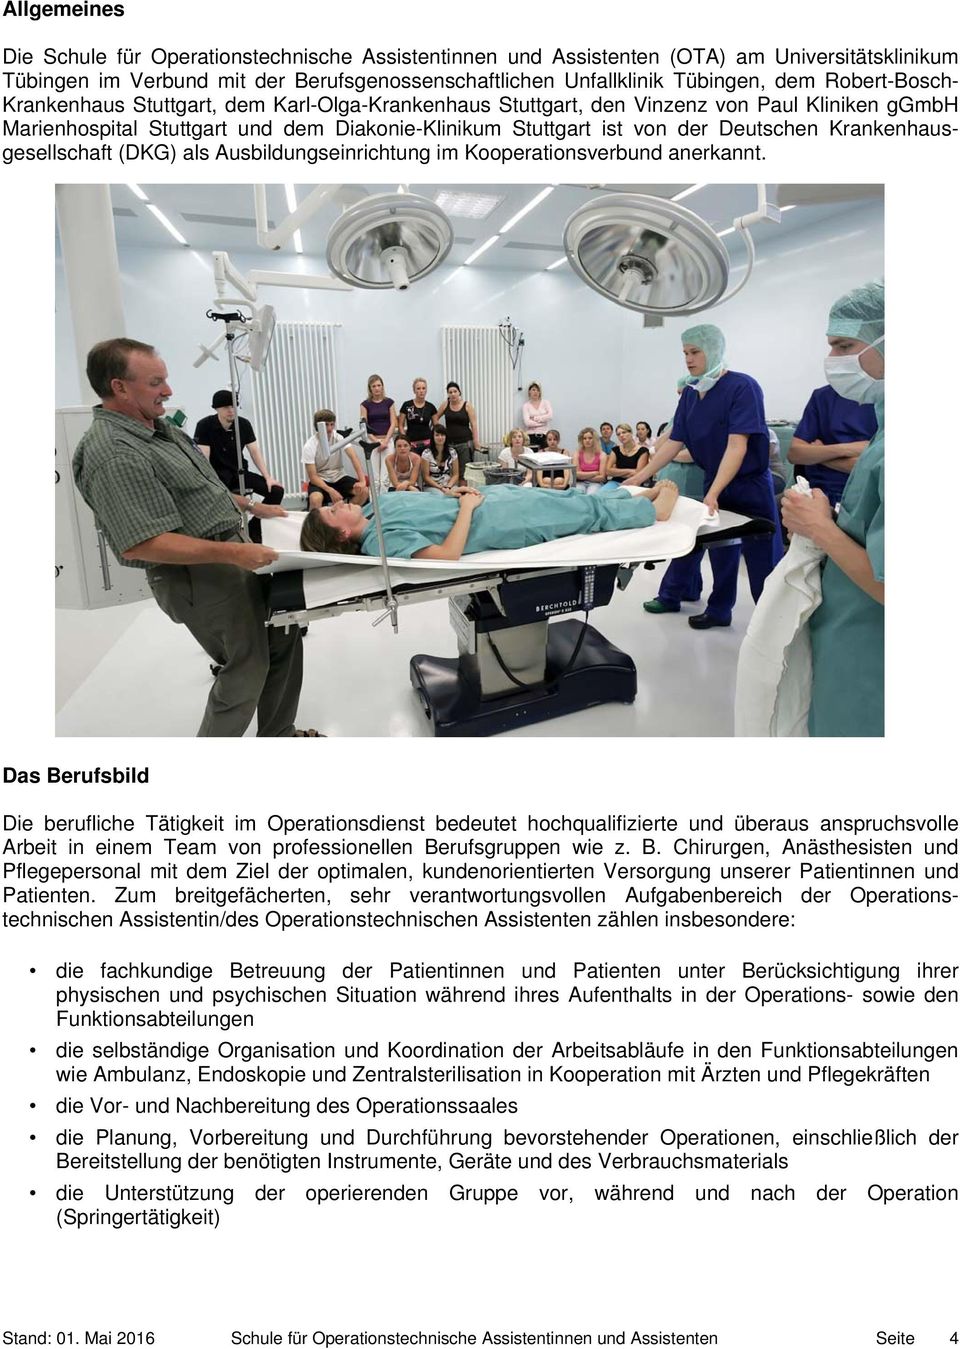 Krankenhausgesellschaft (DKG) als Ausbildungseinrichtung im Kooperationsverbund anerkannt.